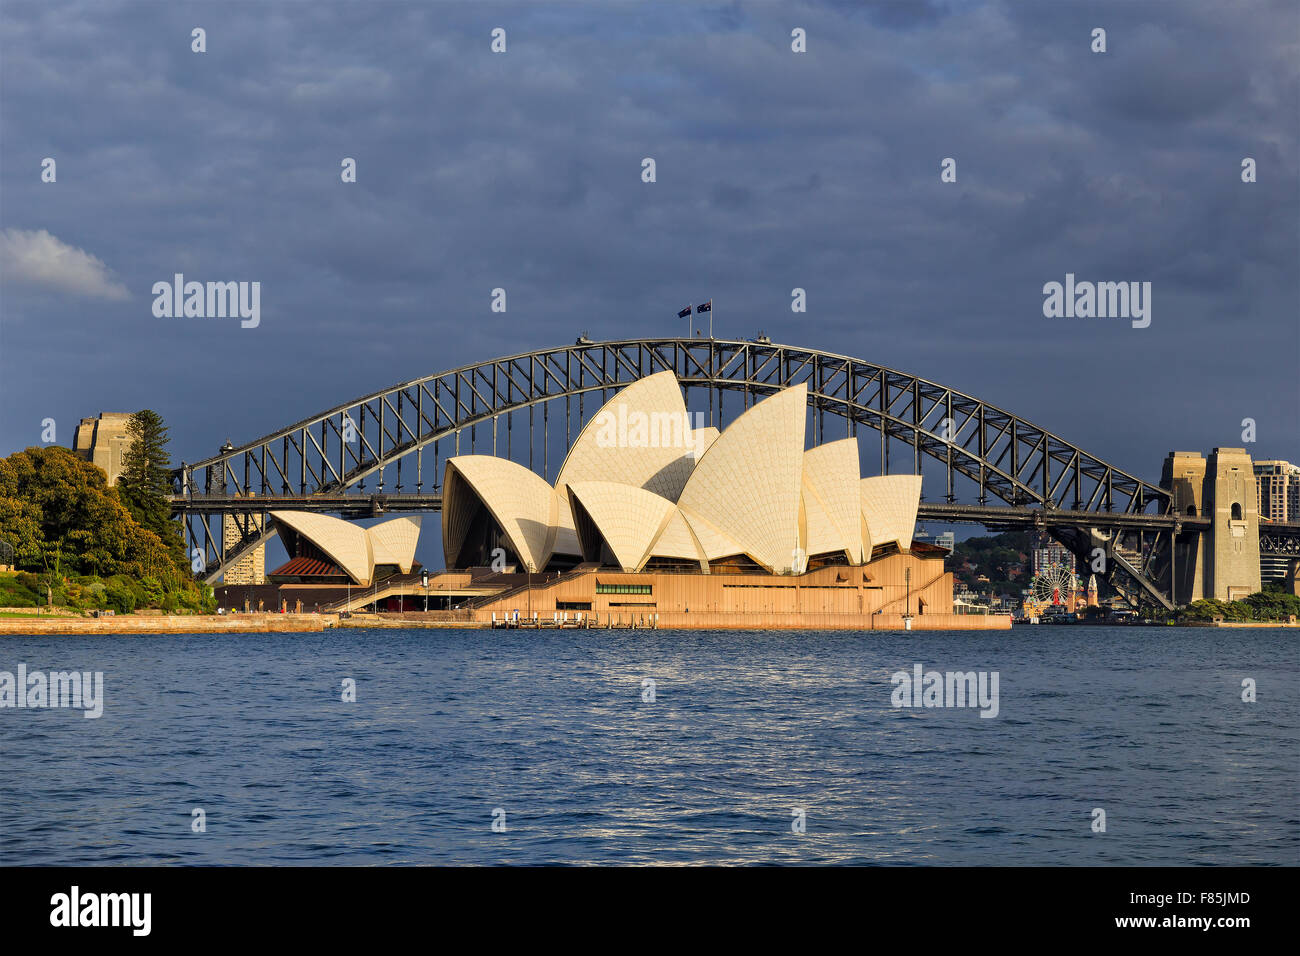 SYDNEY, AUSTRALIE, 22 novembe 2015 - Opéra de Sydney et le Harbour Bridge de Sydney au lever du soleil. Emblématiques et célèbres Banque D'Images